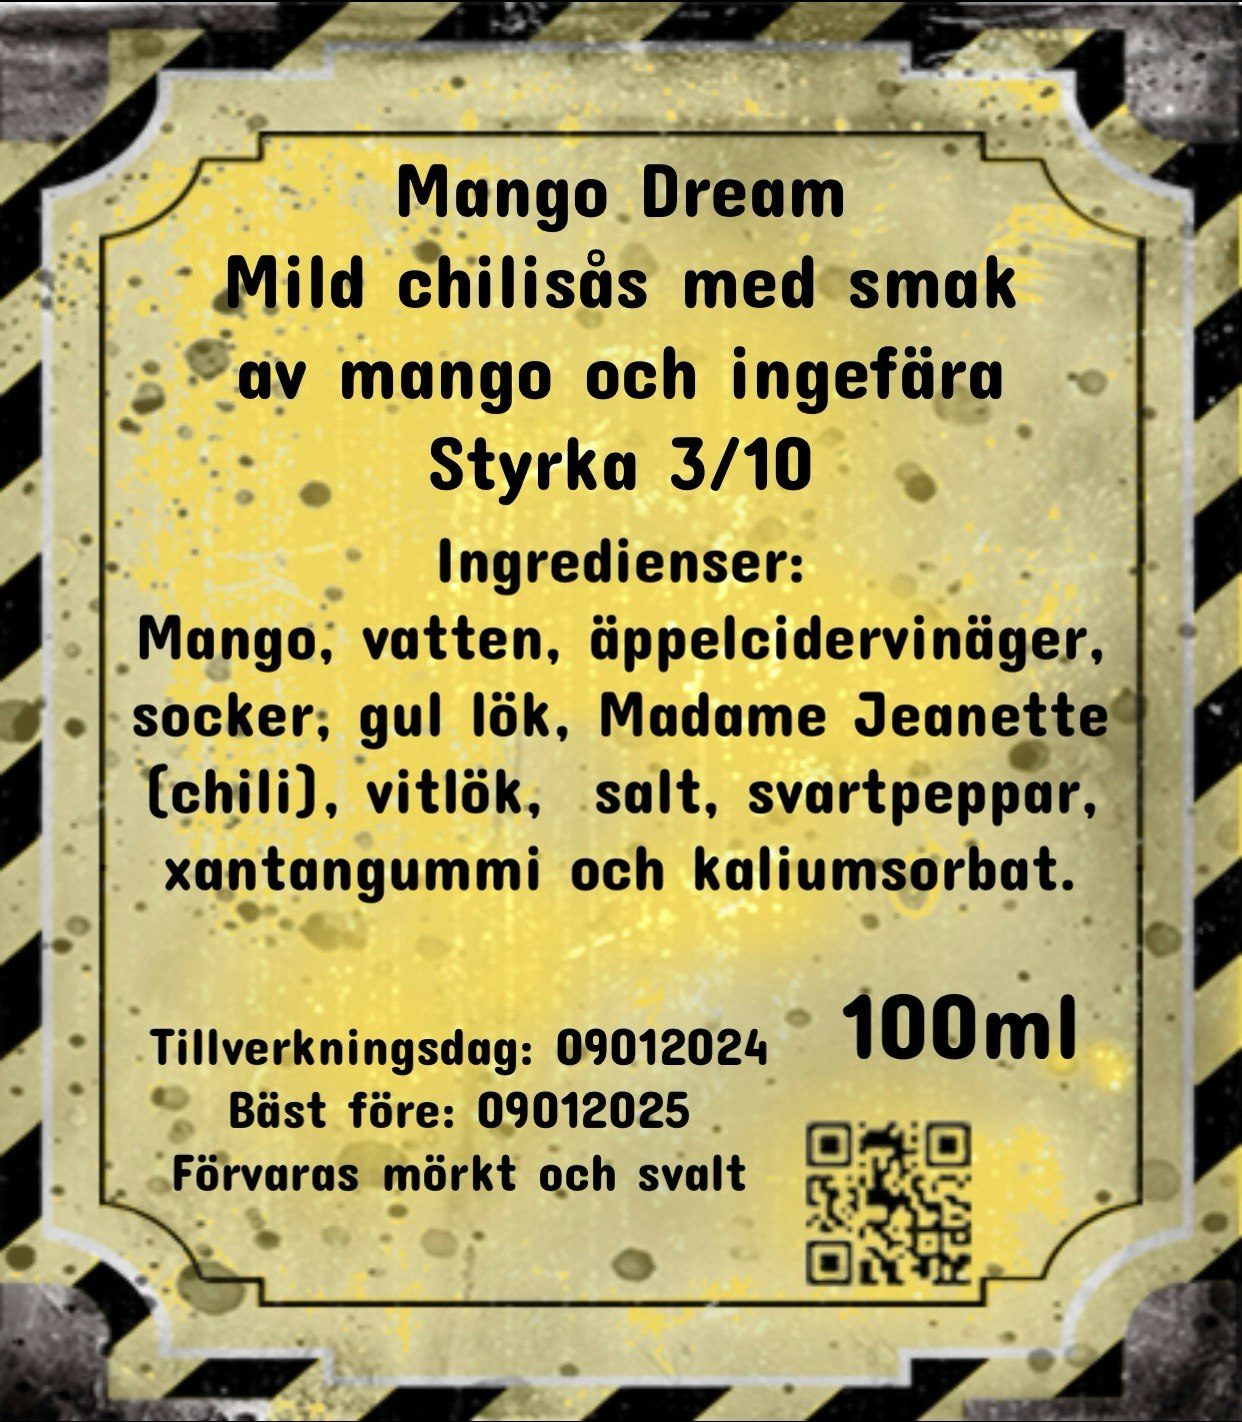 Mango Dream (Nytt recept)